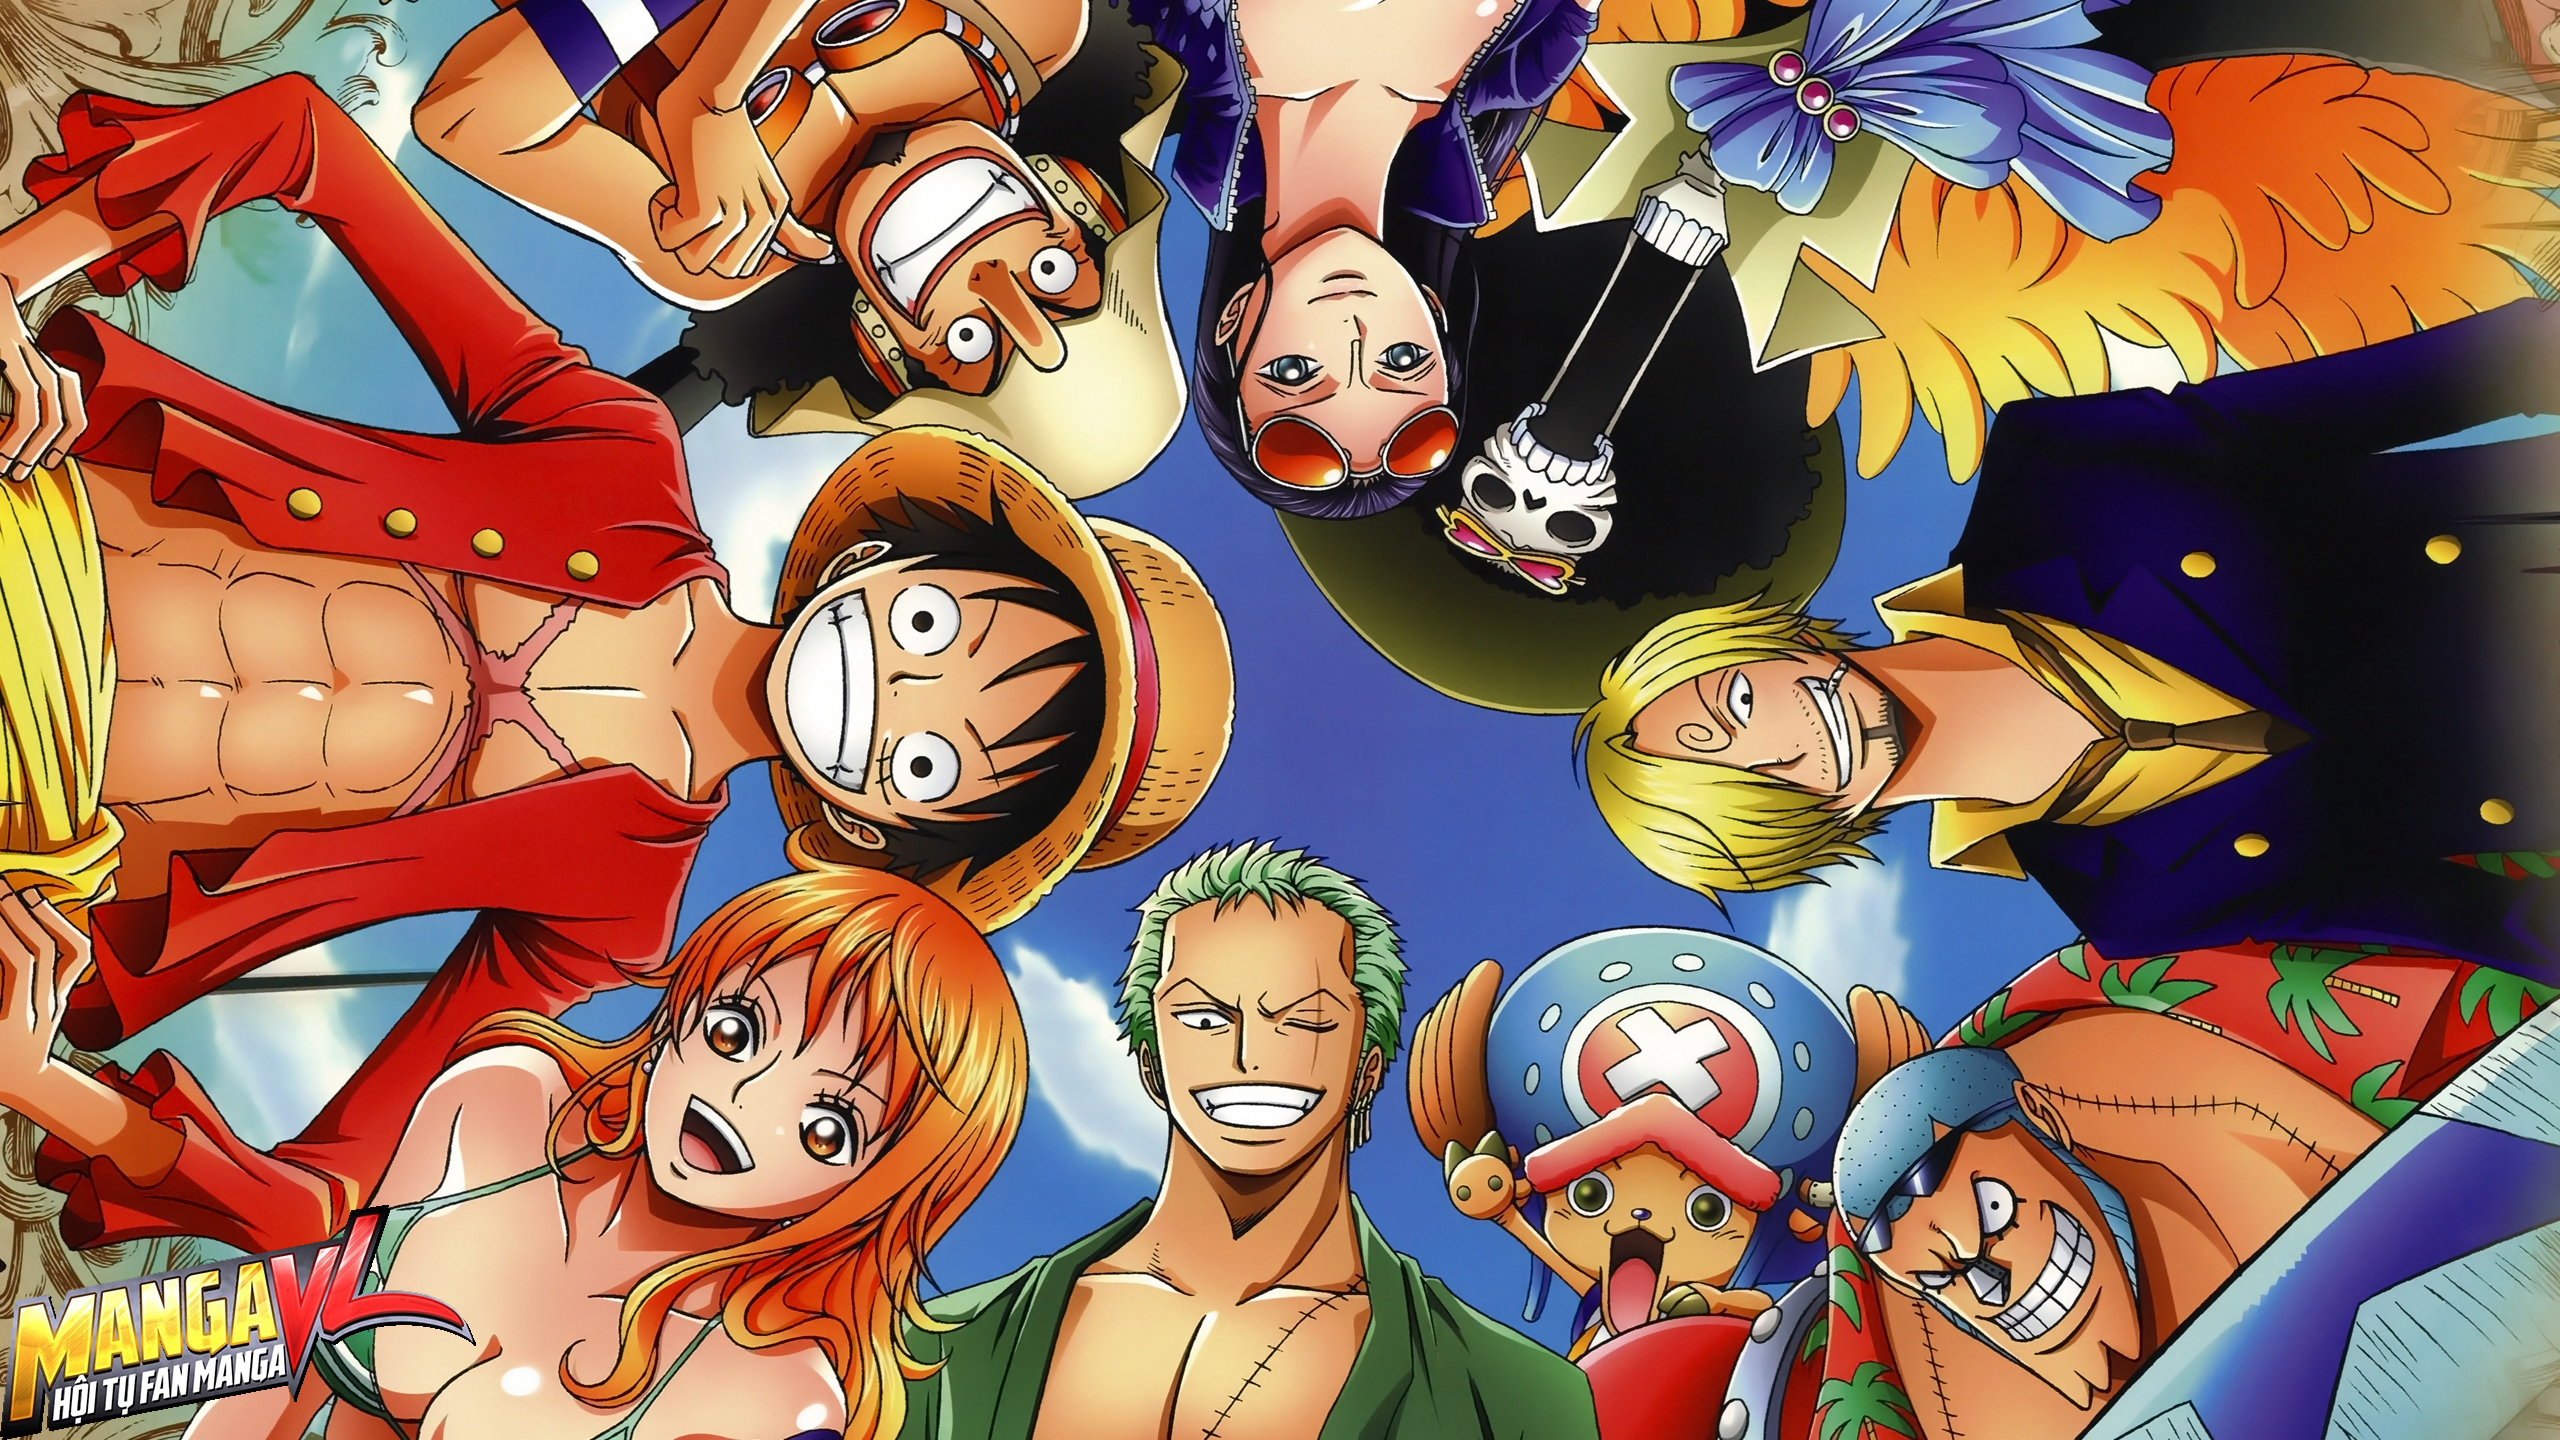 Sức hút của các nhân vật nữ trong One Piece cũng không kém phần so với các nhân vật nam. Từ Nami đến Robin, từ Boa Hancock đến Perona, các nhân vật nữ trong One Piece đều được thiết kế vô cùng ấn tượng và thu hút. Hãy cùng khám phá nét đẹp của những nhân vật nữ này thông qua hình ảnh liên quan đến từ khóa này.